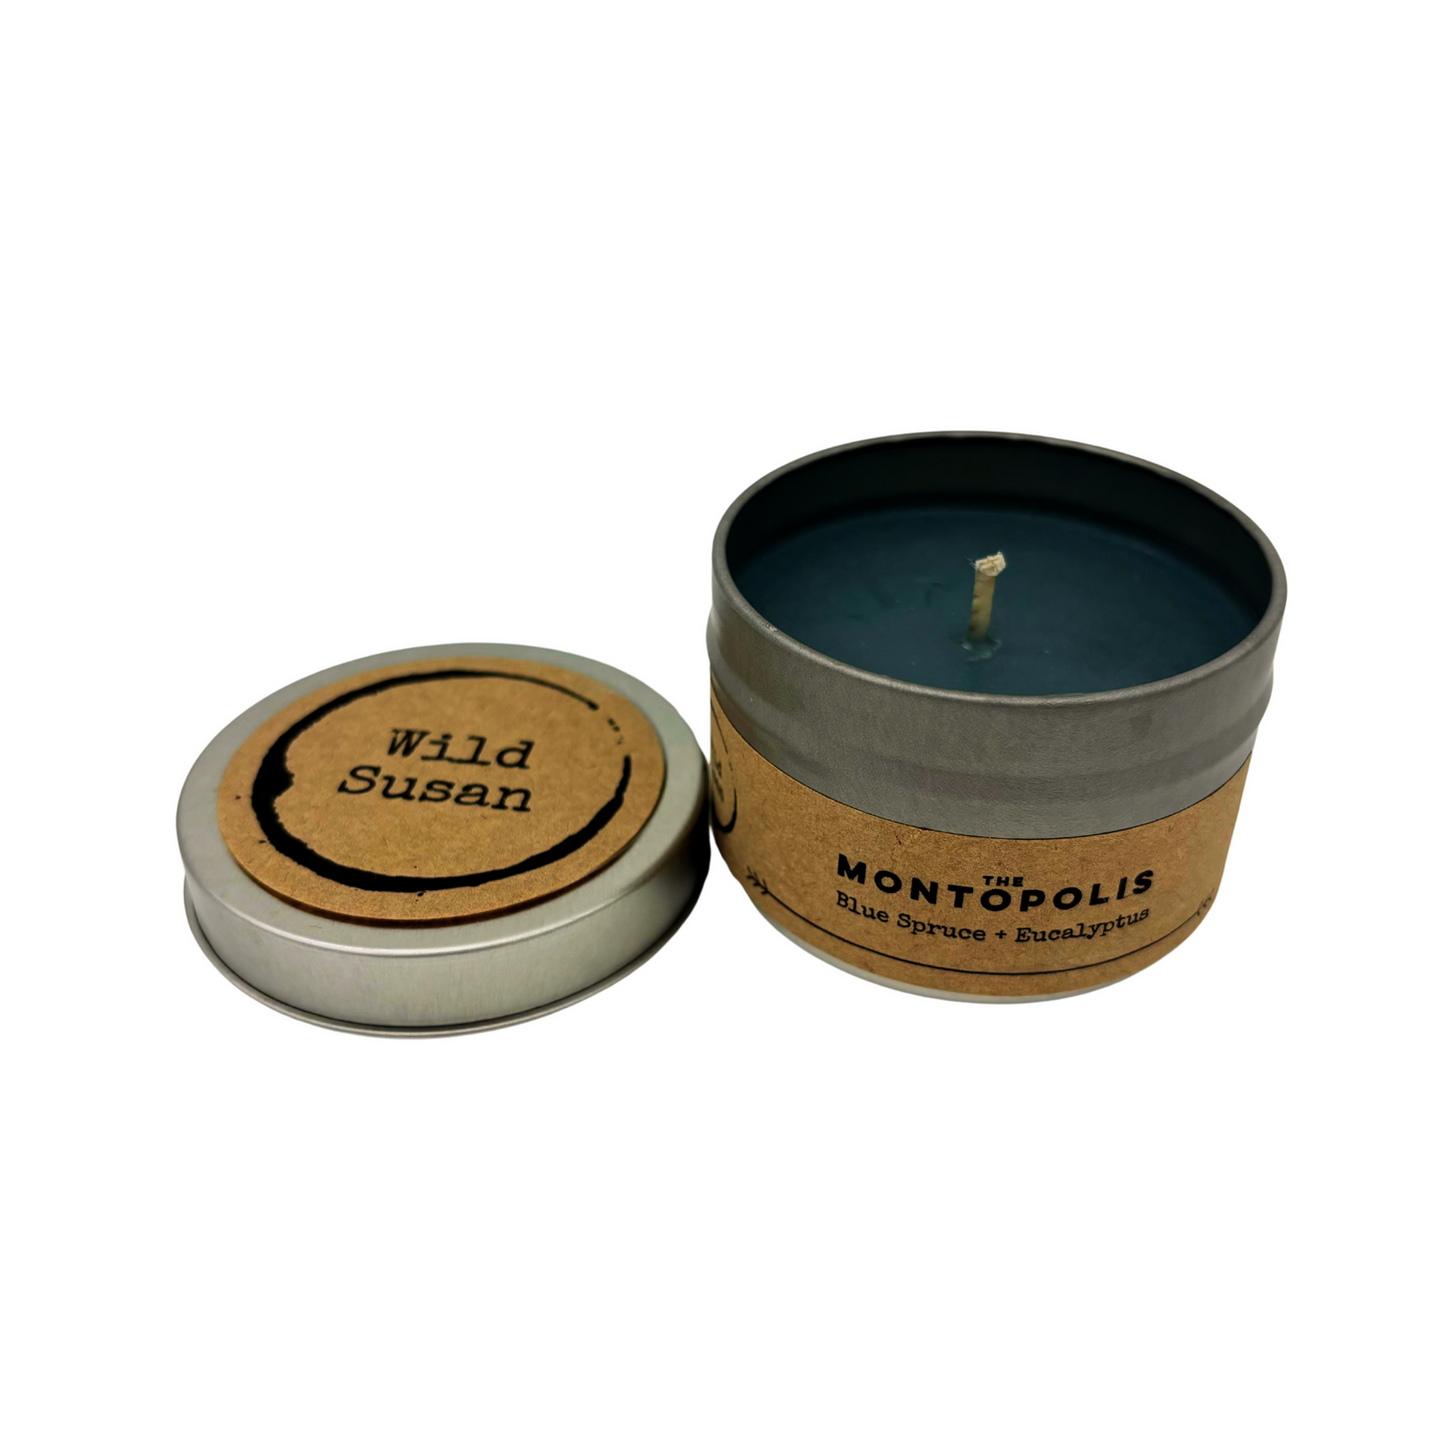 Montopolis [Blue Spruce + Eucalyptus] Soy Candle/Wax Melt